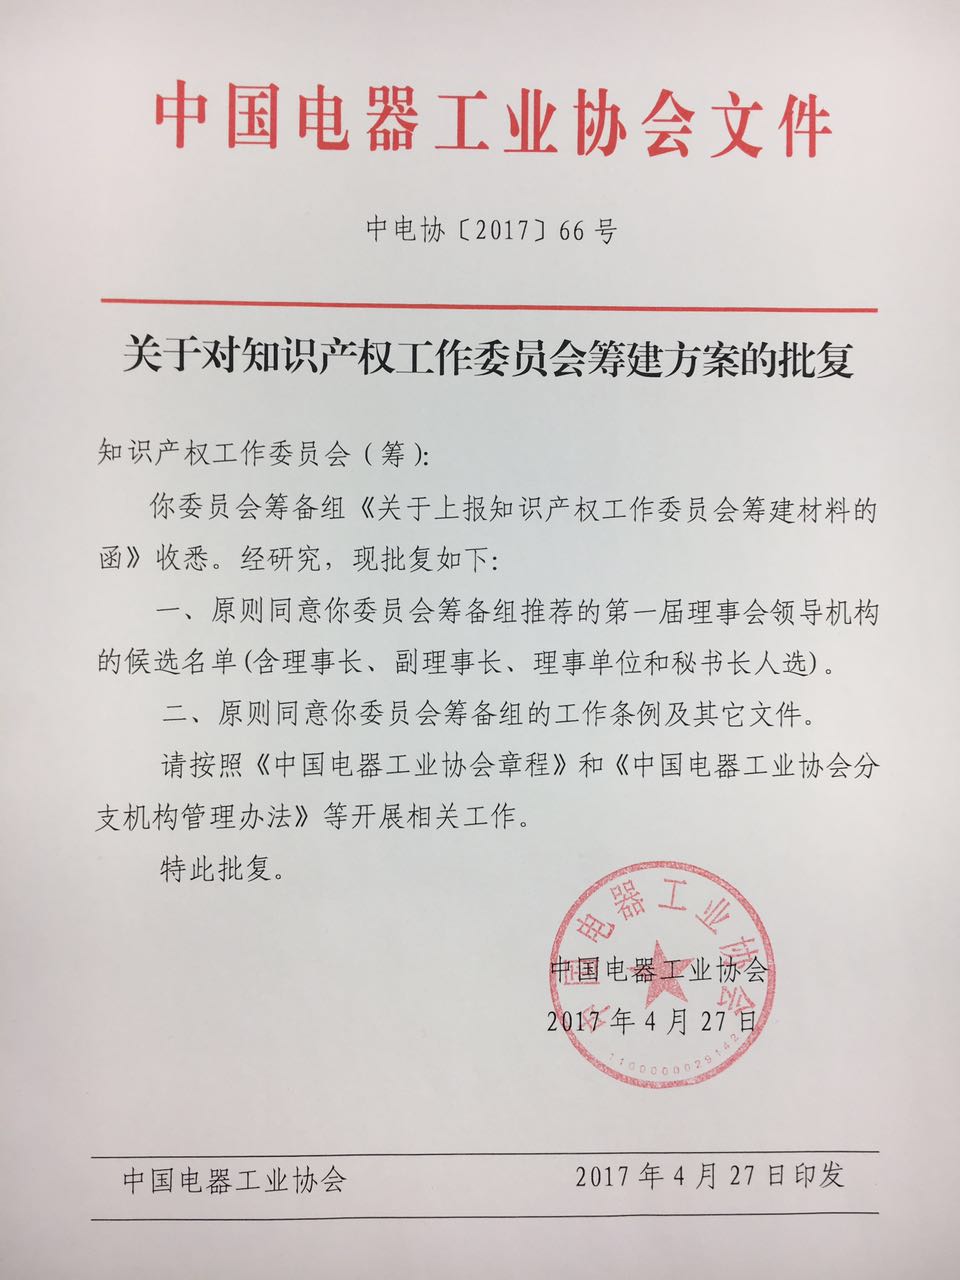 中国电器工业协会知识产权工作委员会成立批复文件.jpg